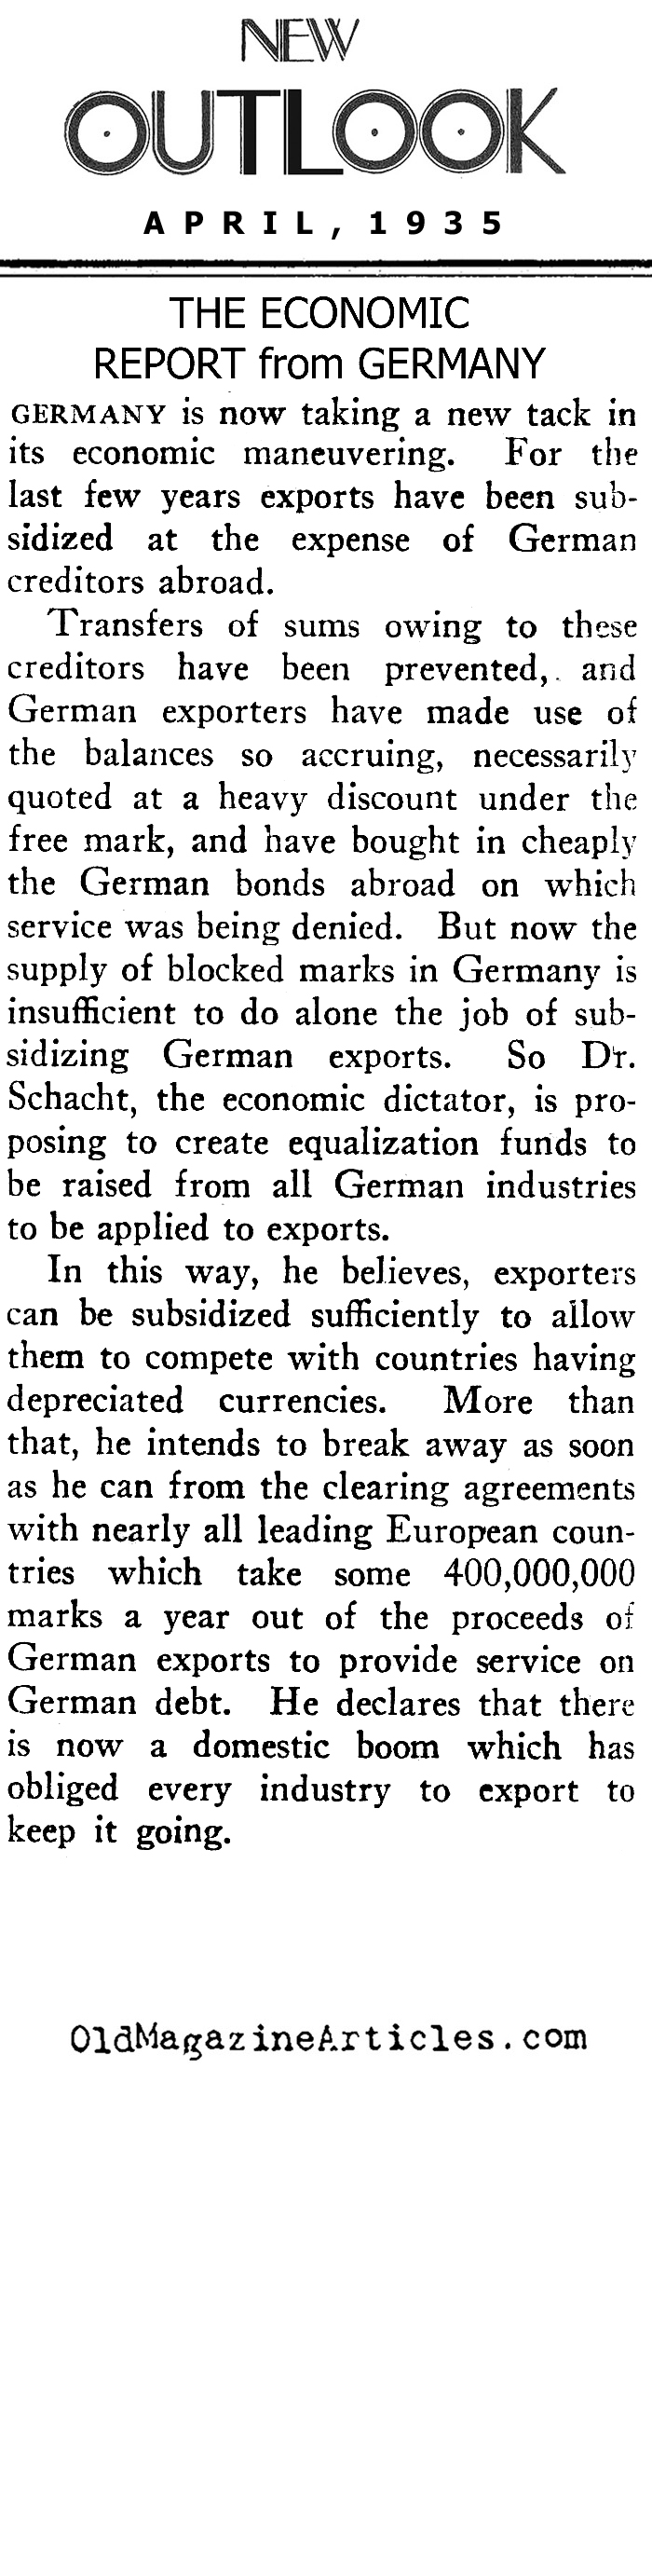 The 1935 German Economy (New Outlook Magazine, 1935)